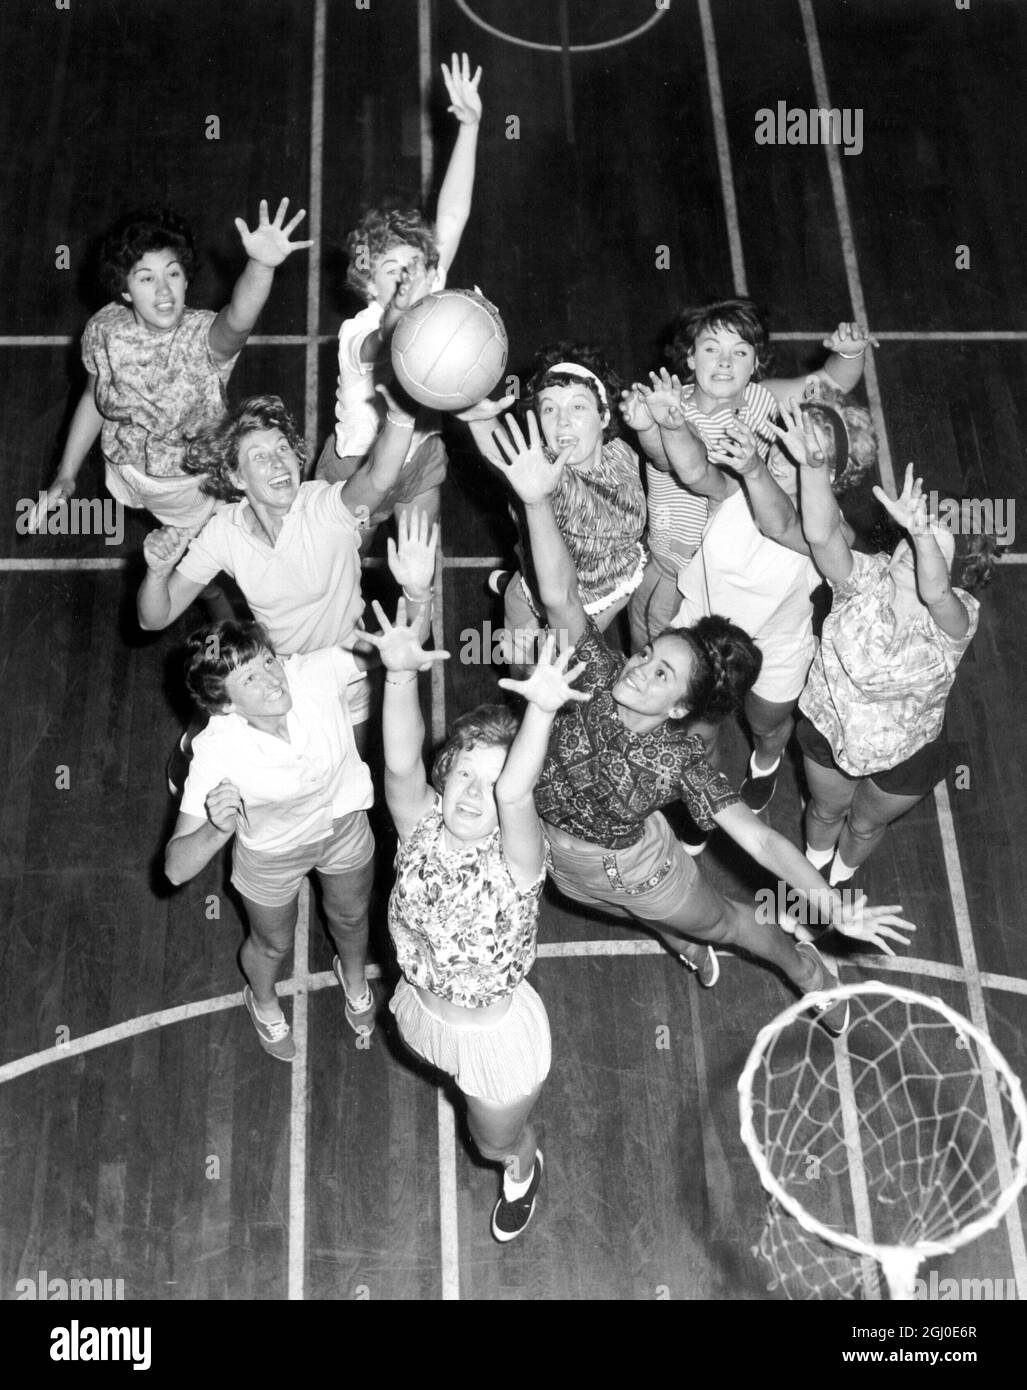 Una vista dall'alto dei membri della squadra neozelandese di netball che si allenano al Regent Street Polytechnic Gymnasium di Londra. Sono qui per un tour di sette settimane della Gran Bretagna. 18 luglio 1963. Foto Stock